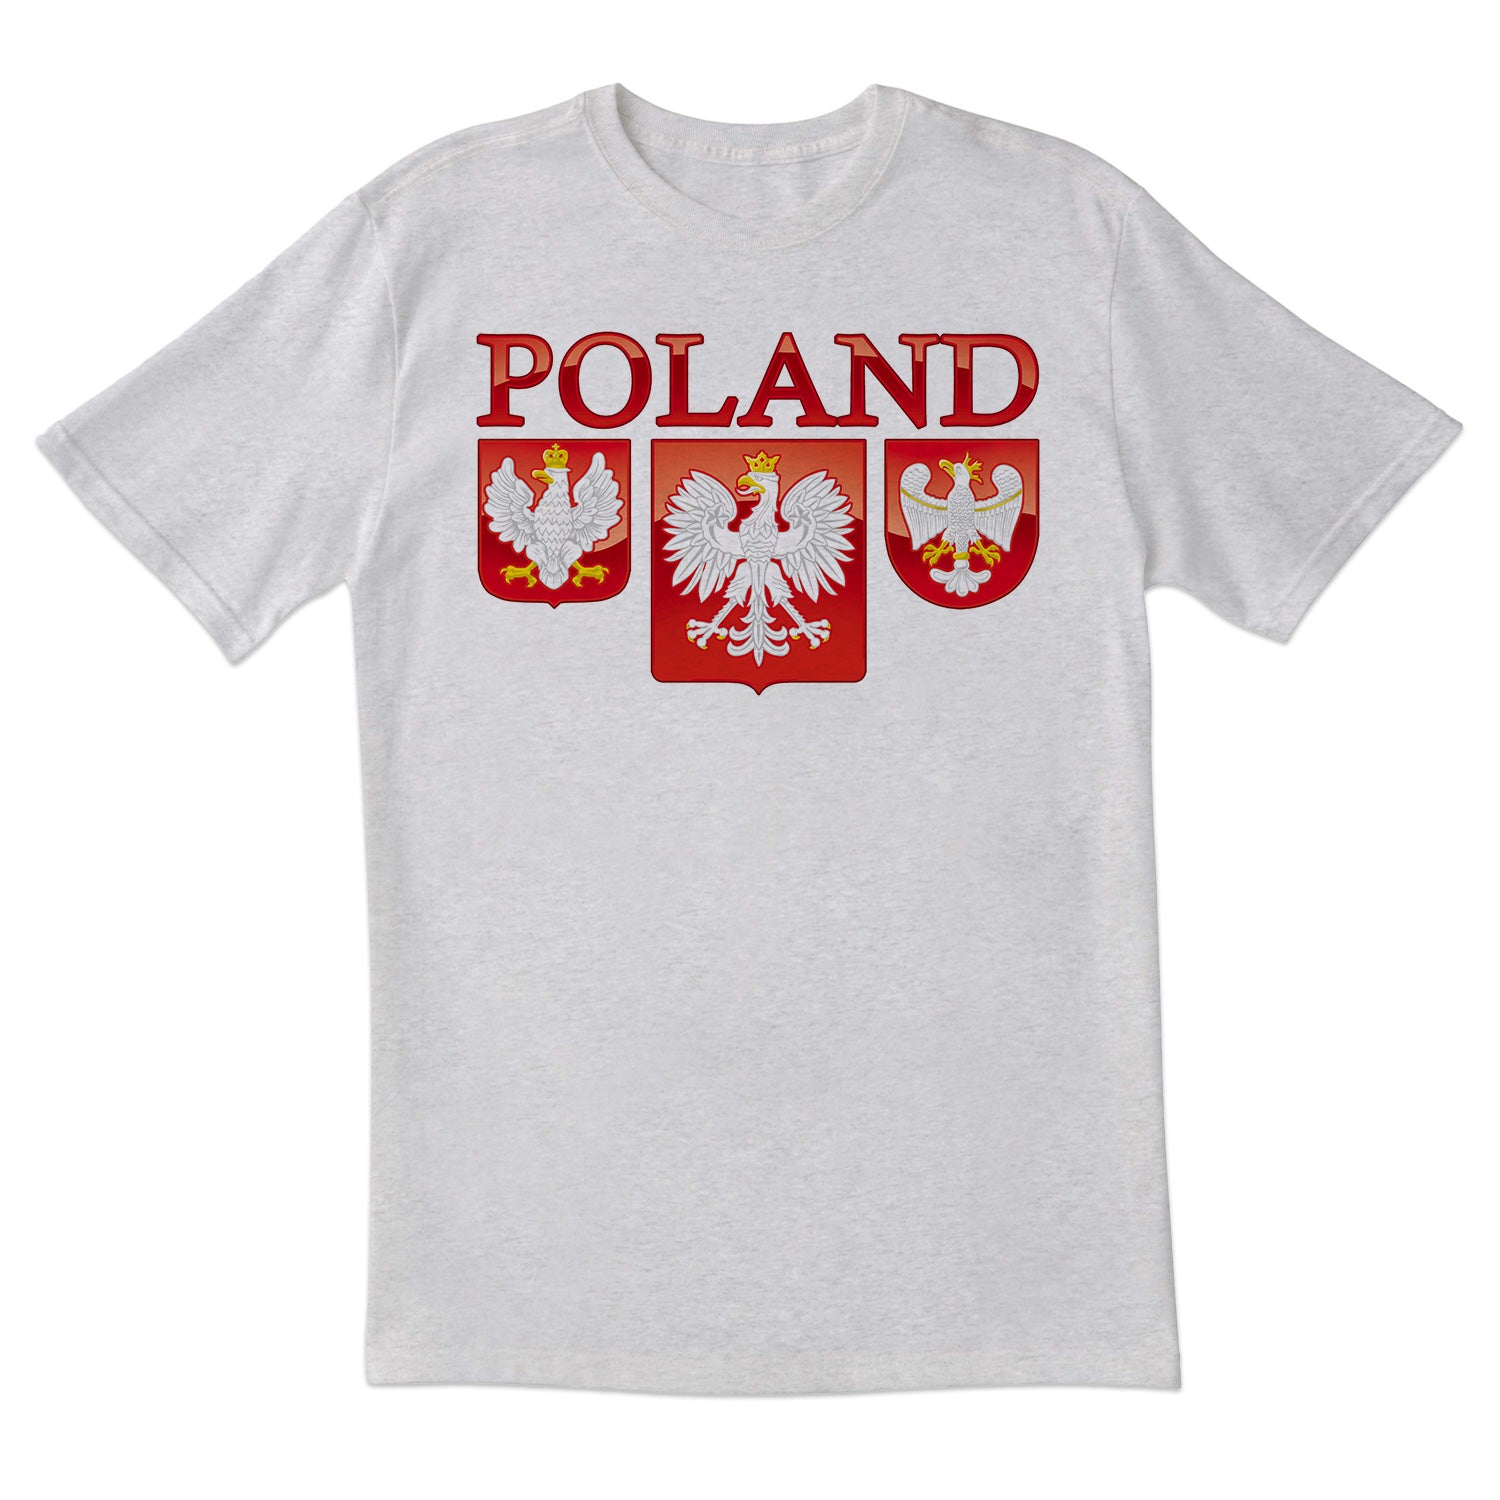 Three Polish Eagle Shields Short Sleeve Tshirt